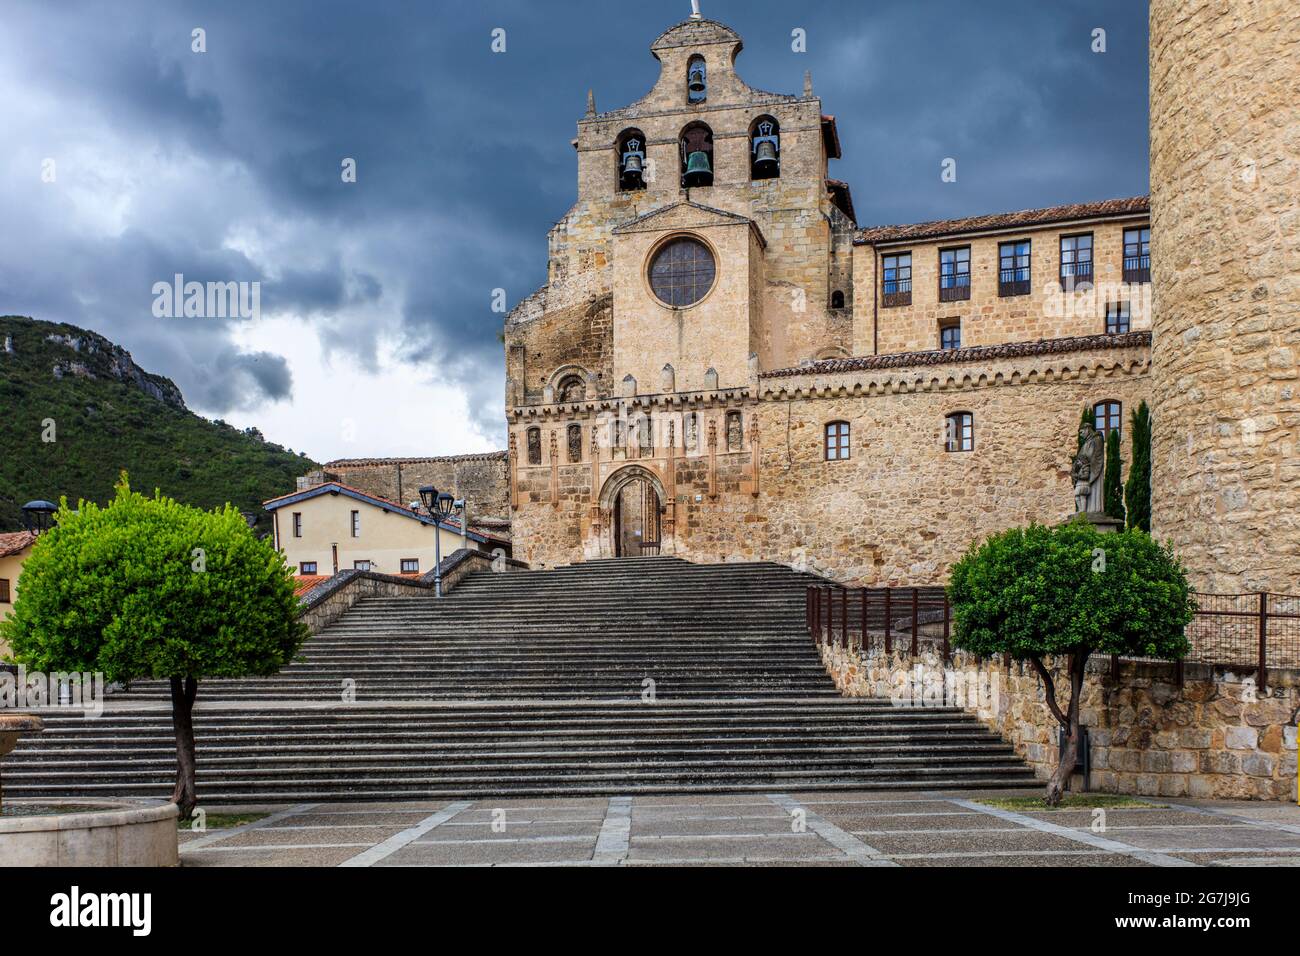 Oña, ein historisches Dorf in Burgos, Nordspanien. Die gotische Kirche und das Kloster San Salvador de Oña sind die wichtigsten historischen Stätten. Stockfoto